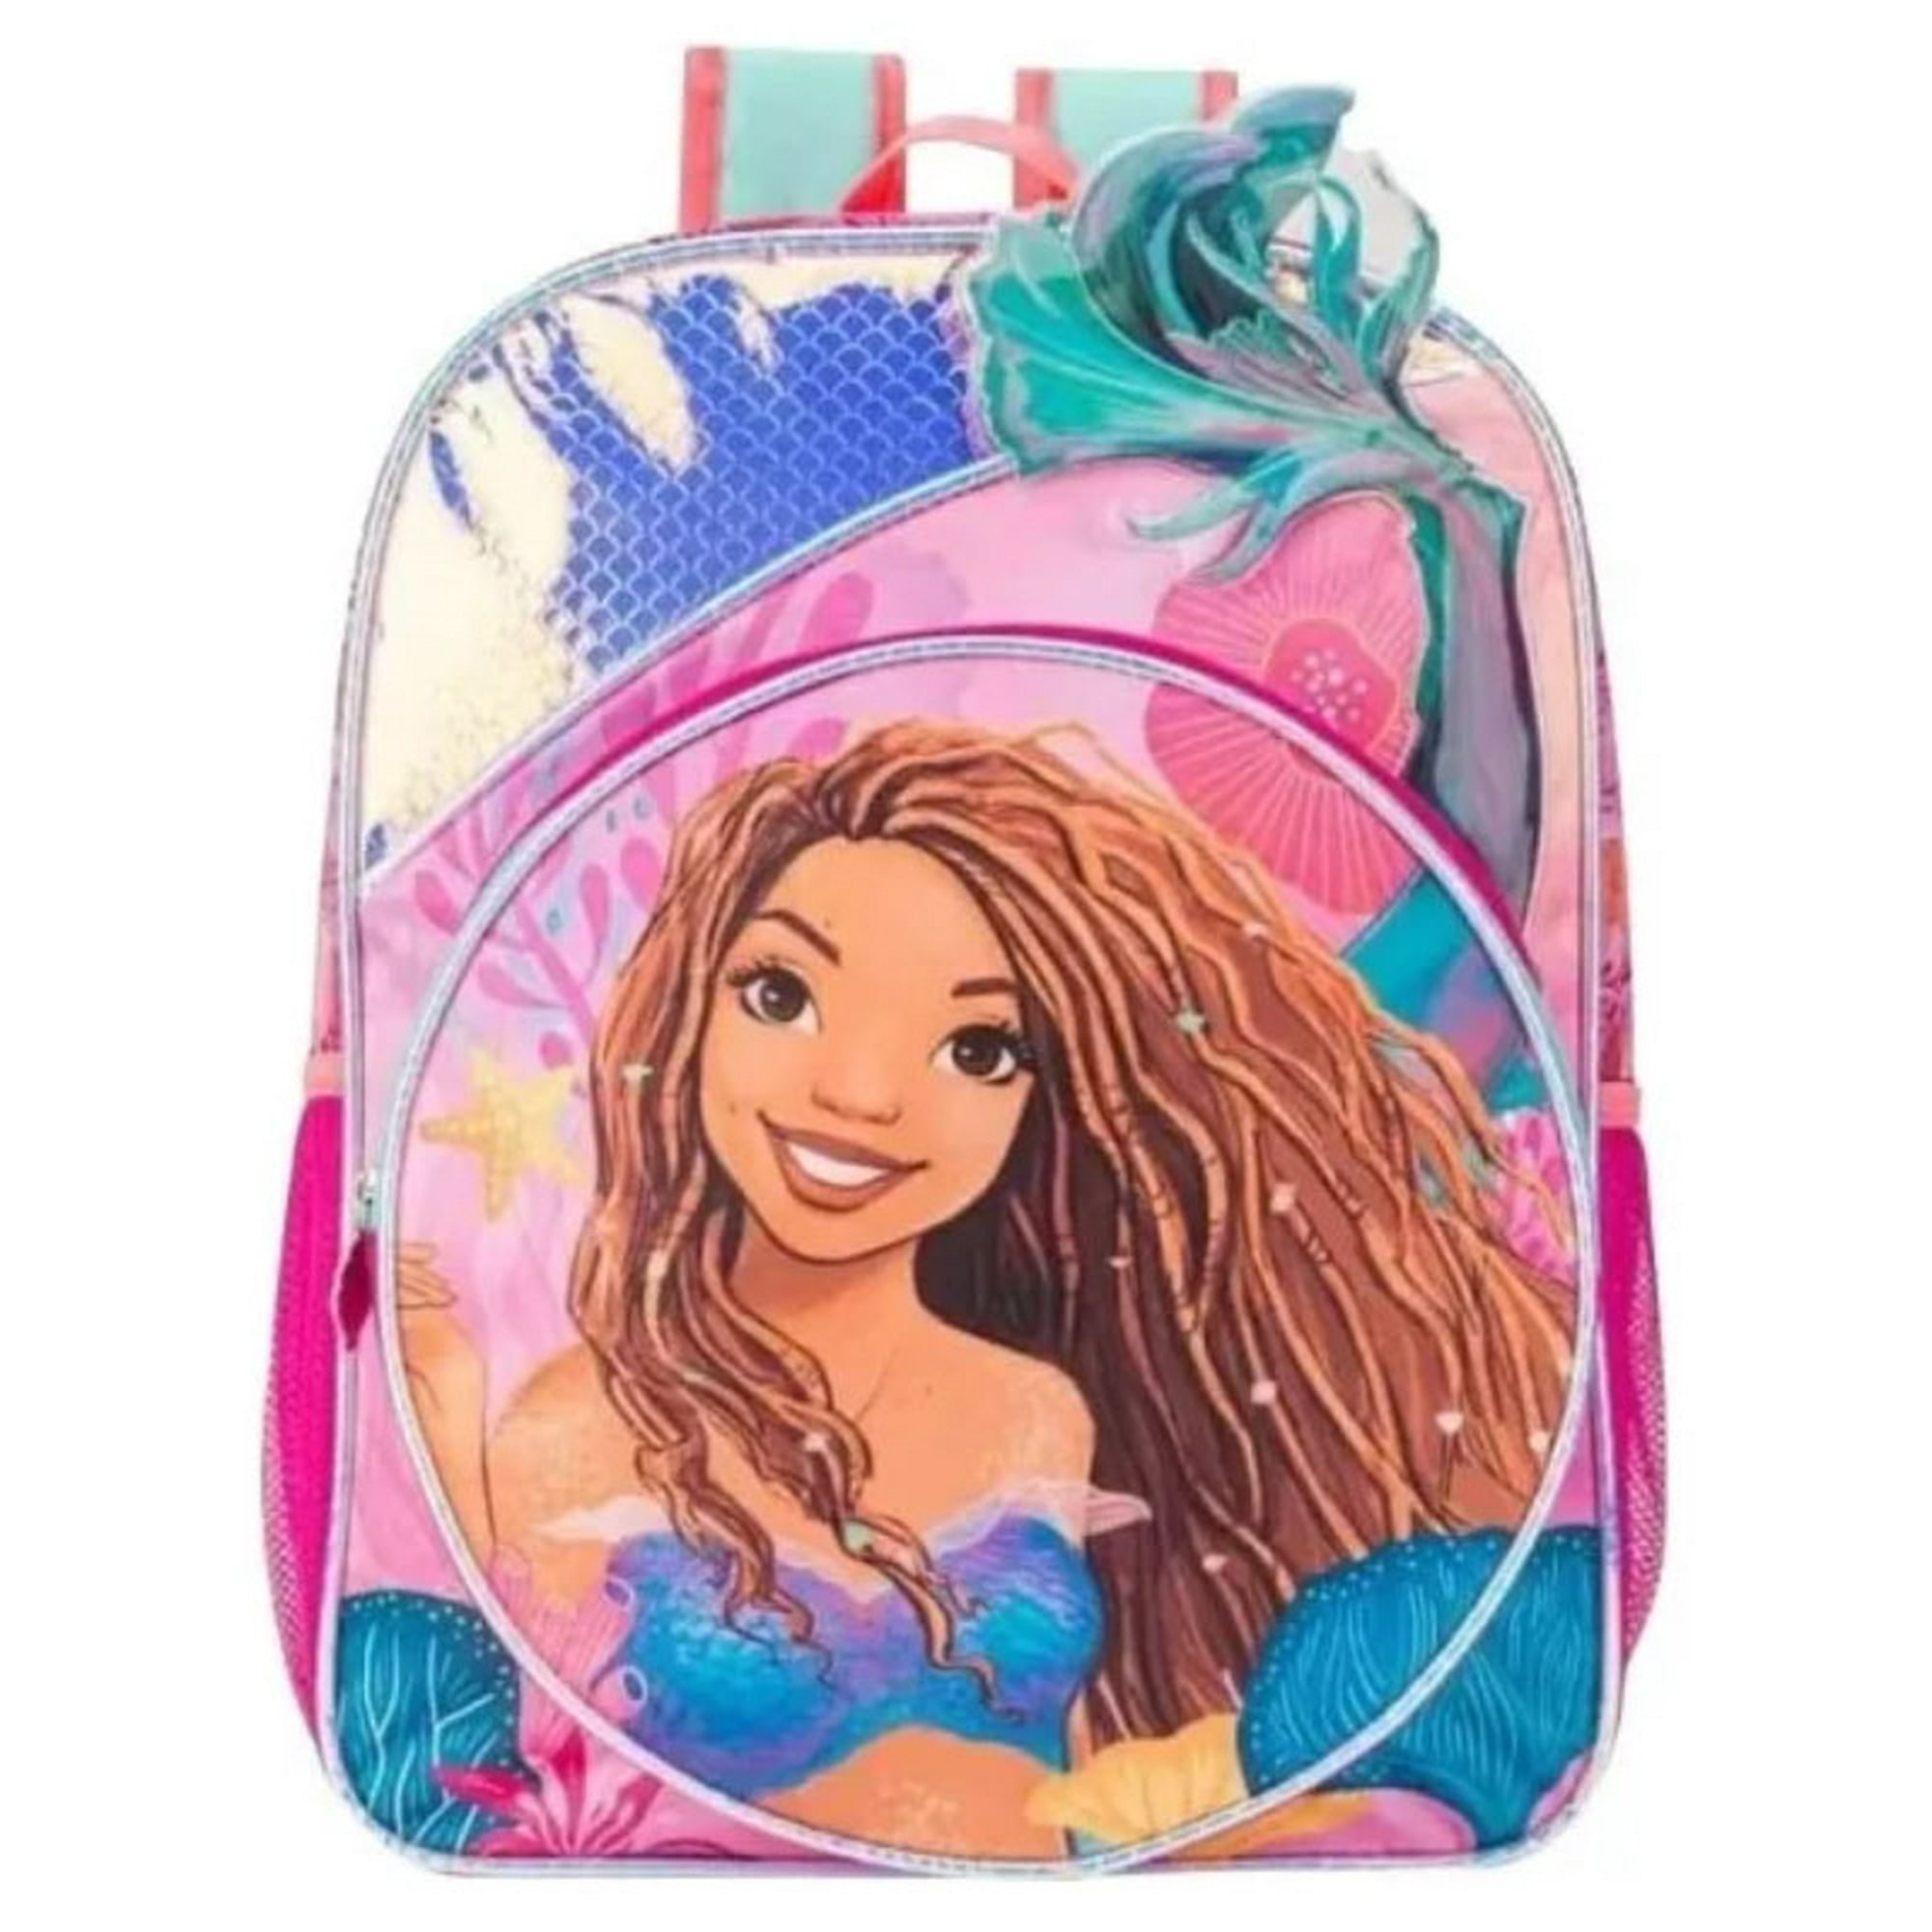 Mochila escolar sirenita backpack para niña modelo reforzado ruz escolar